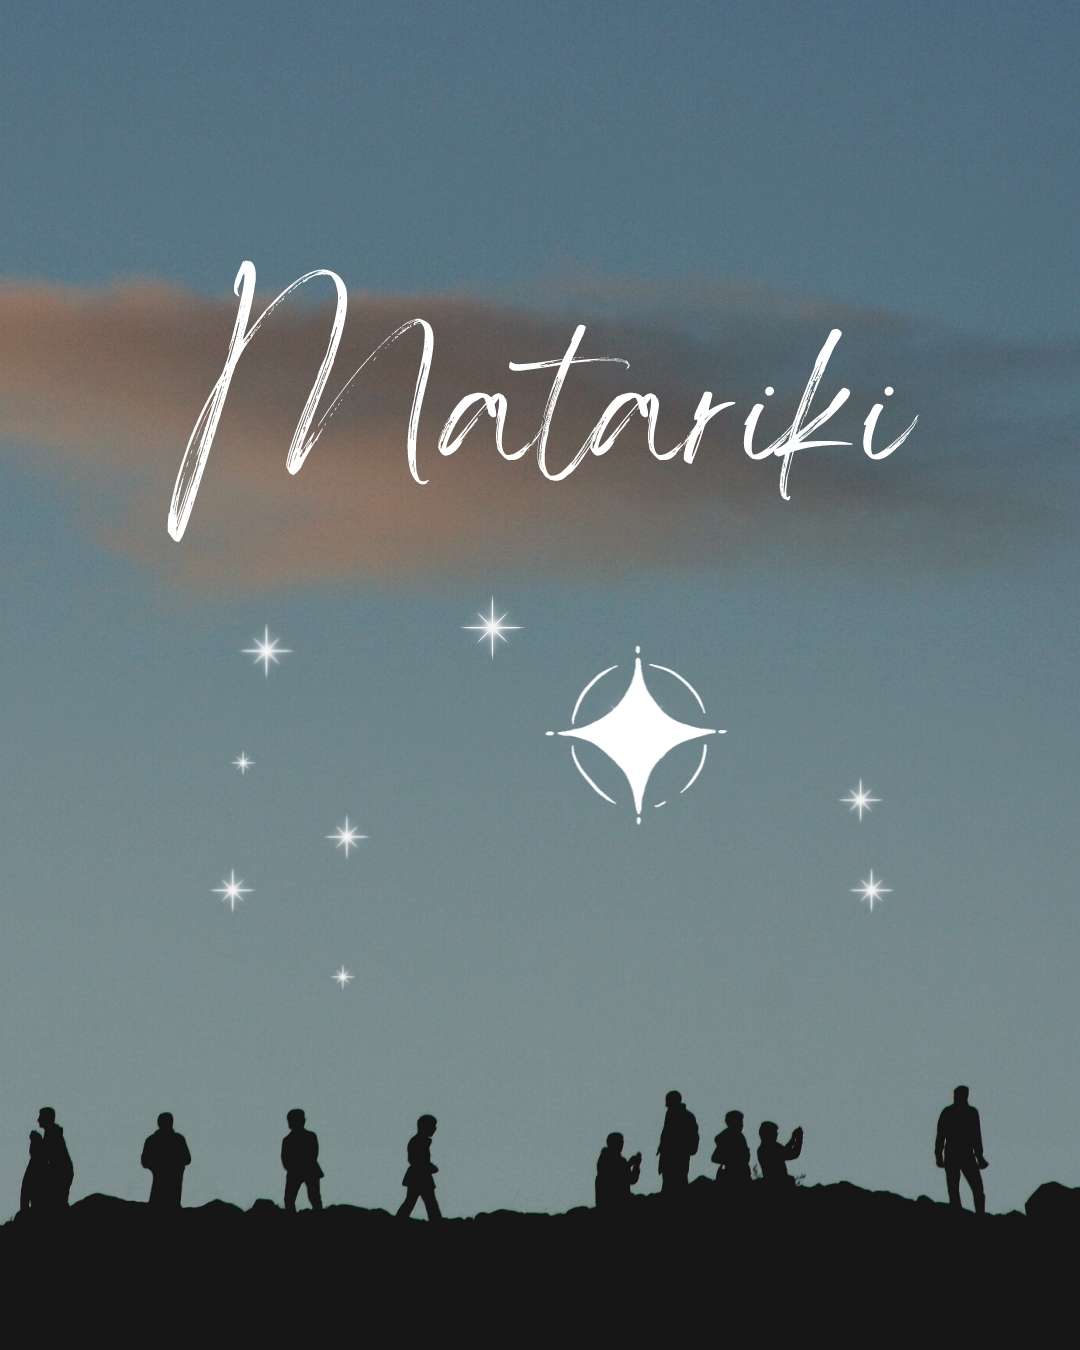 Mānawatia a Matariki!